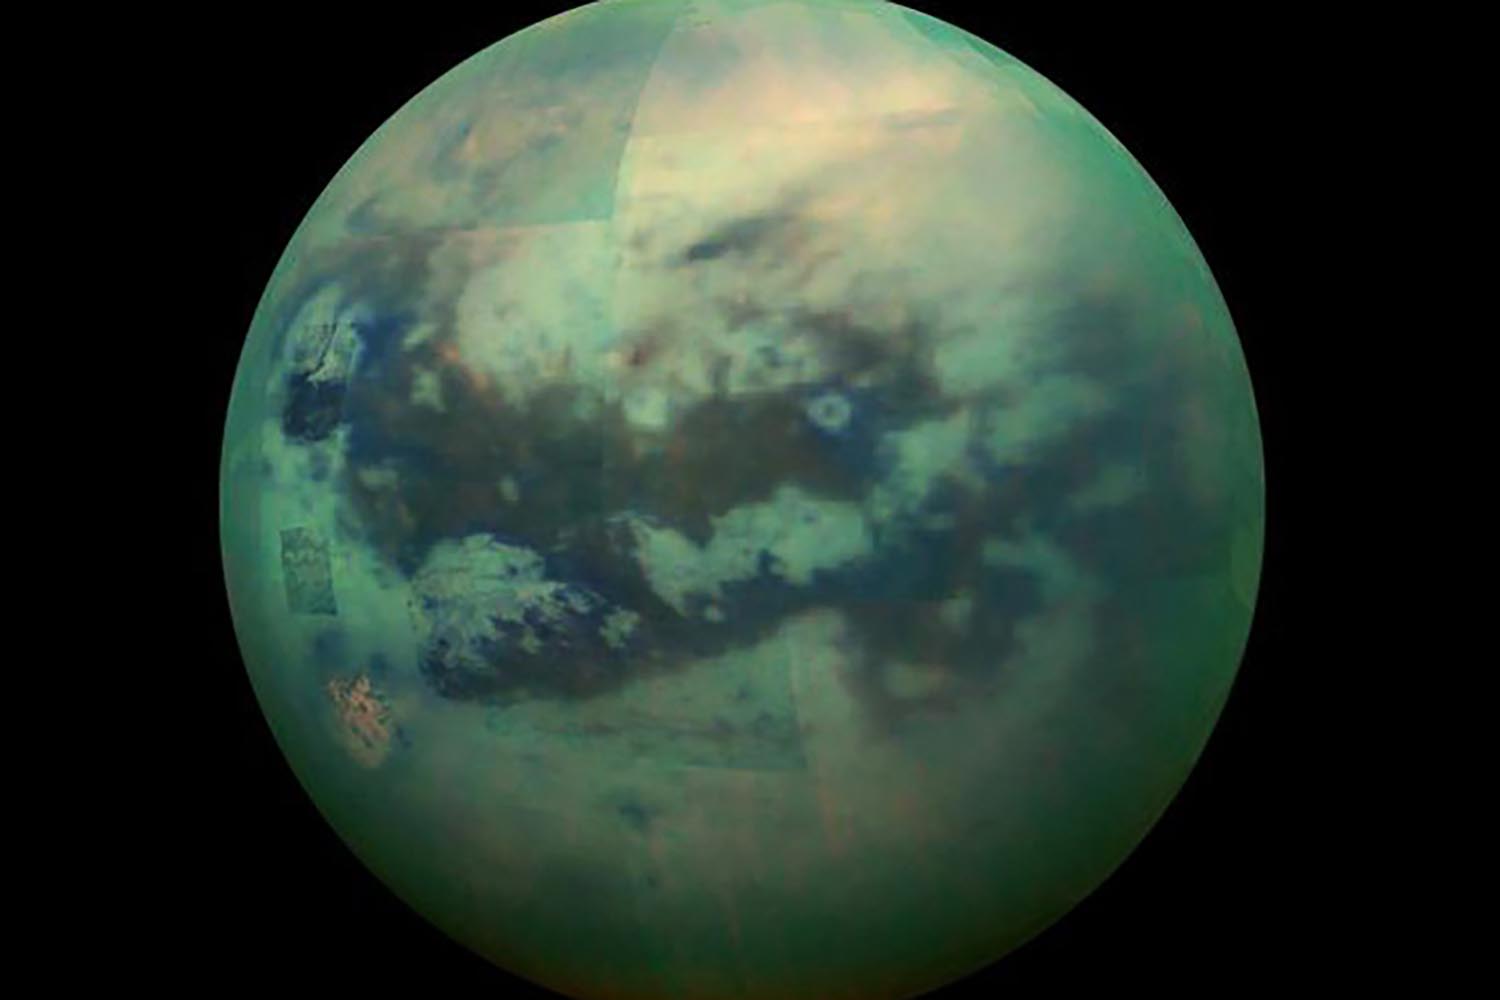 17. Saturn Moon Titan